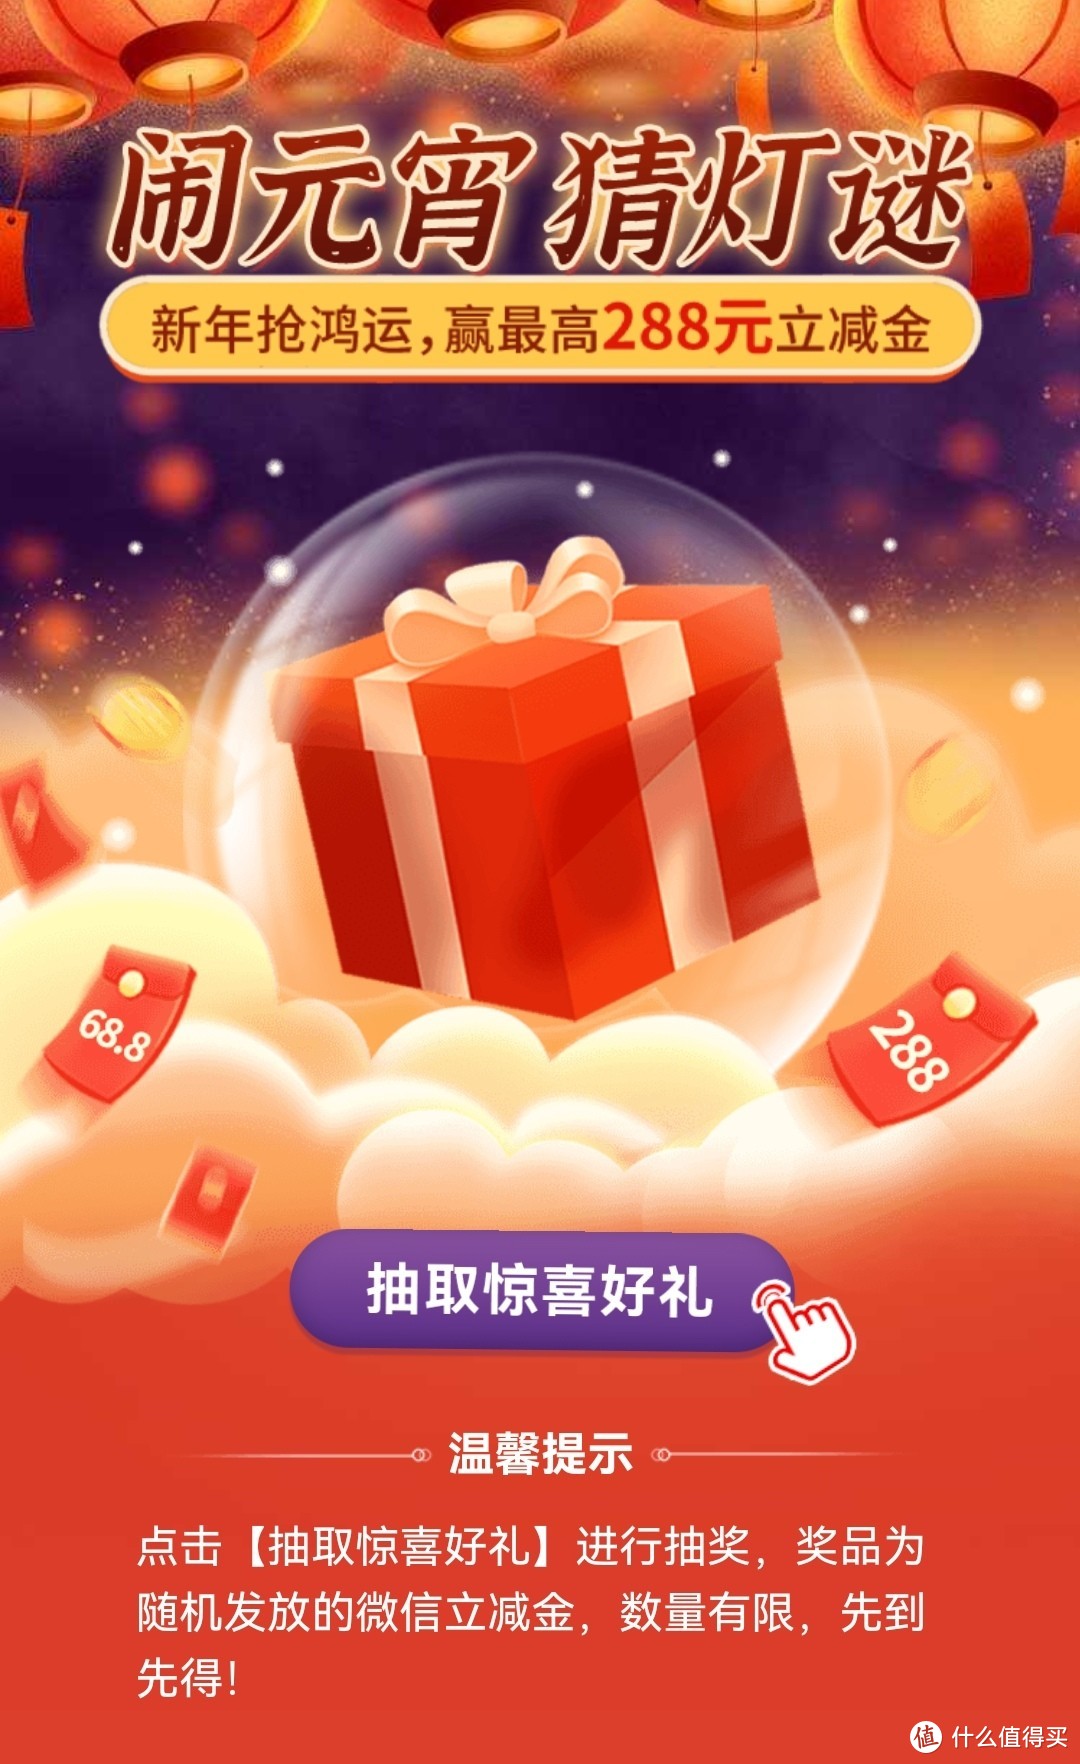 中国银行湖南地区：闹元宵猜灯谜，新年抢鸿运，赢最高288元立减金